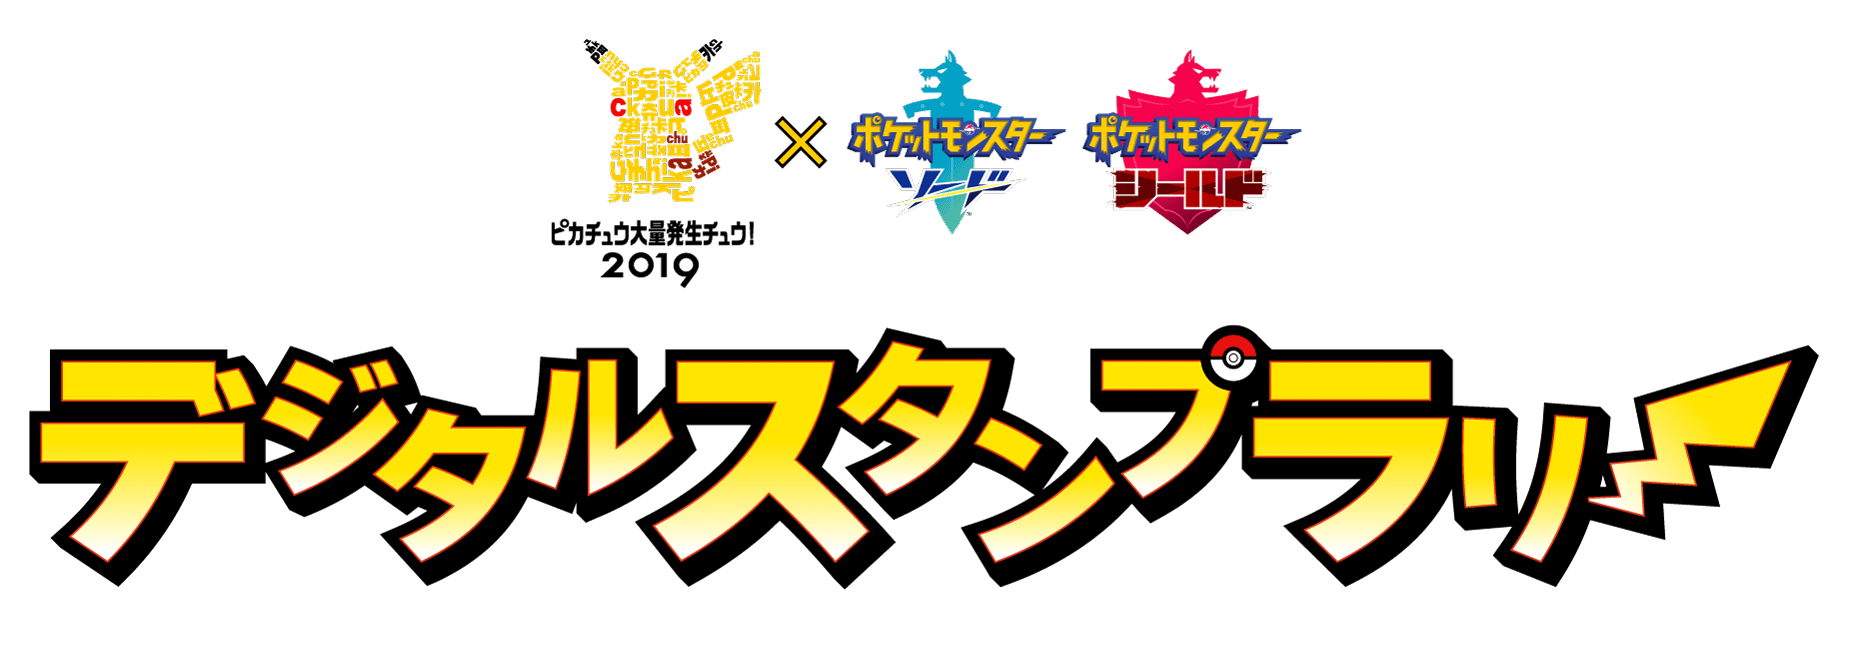 ピカチュウ大量発生チュウ！ 横浜みなとみらい イベント Pikachu event yokohama 9